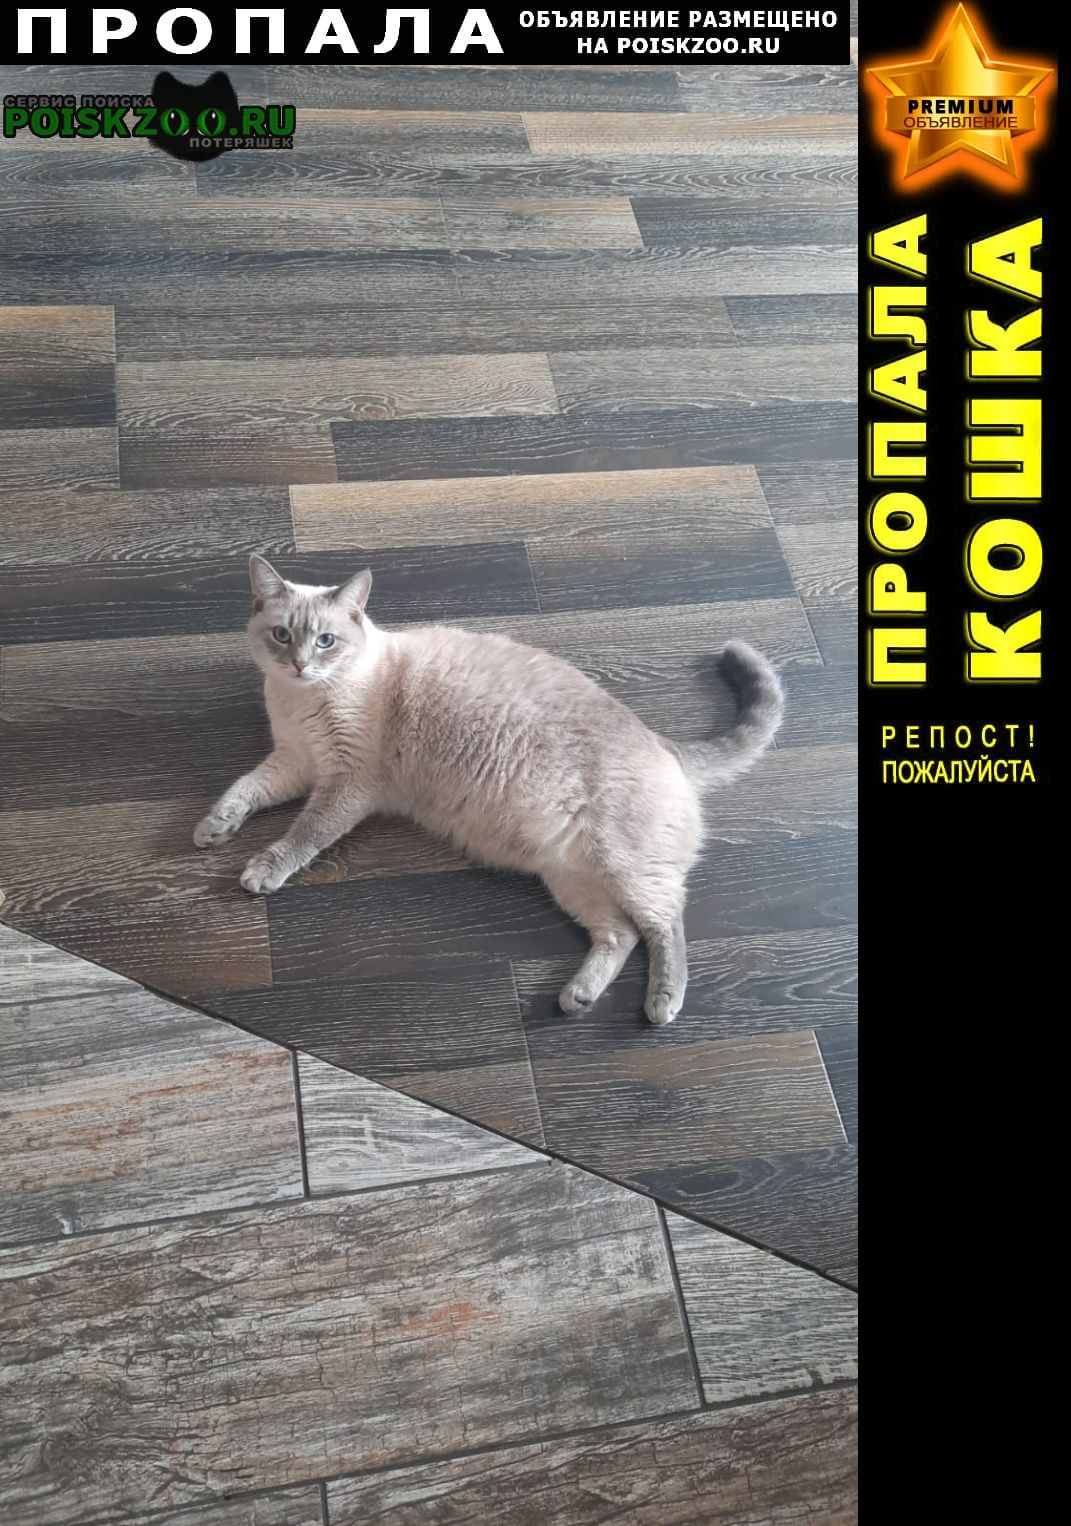 Пропала кошка просим помощи в поиске кошки Ростов-на-Дону